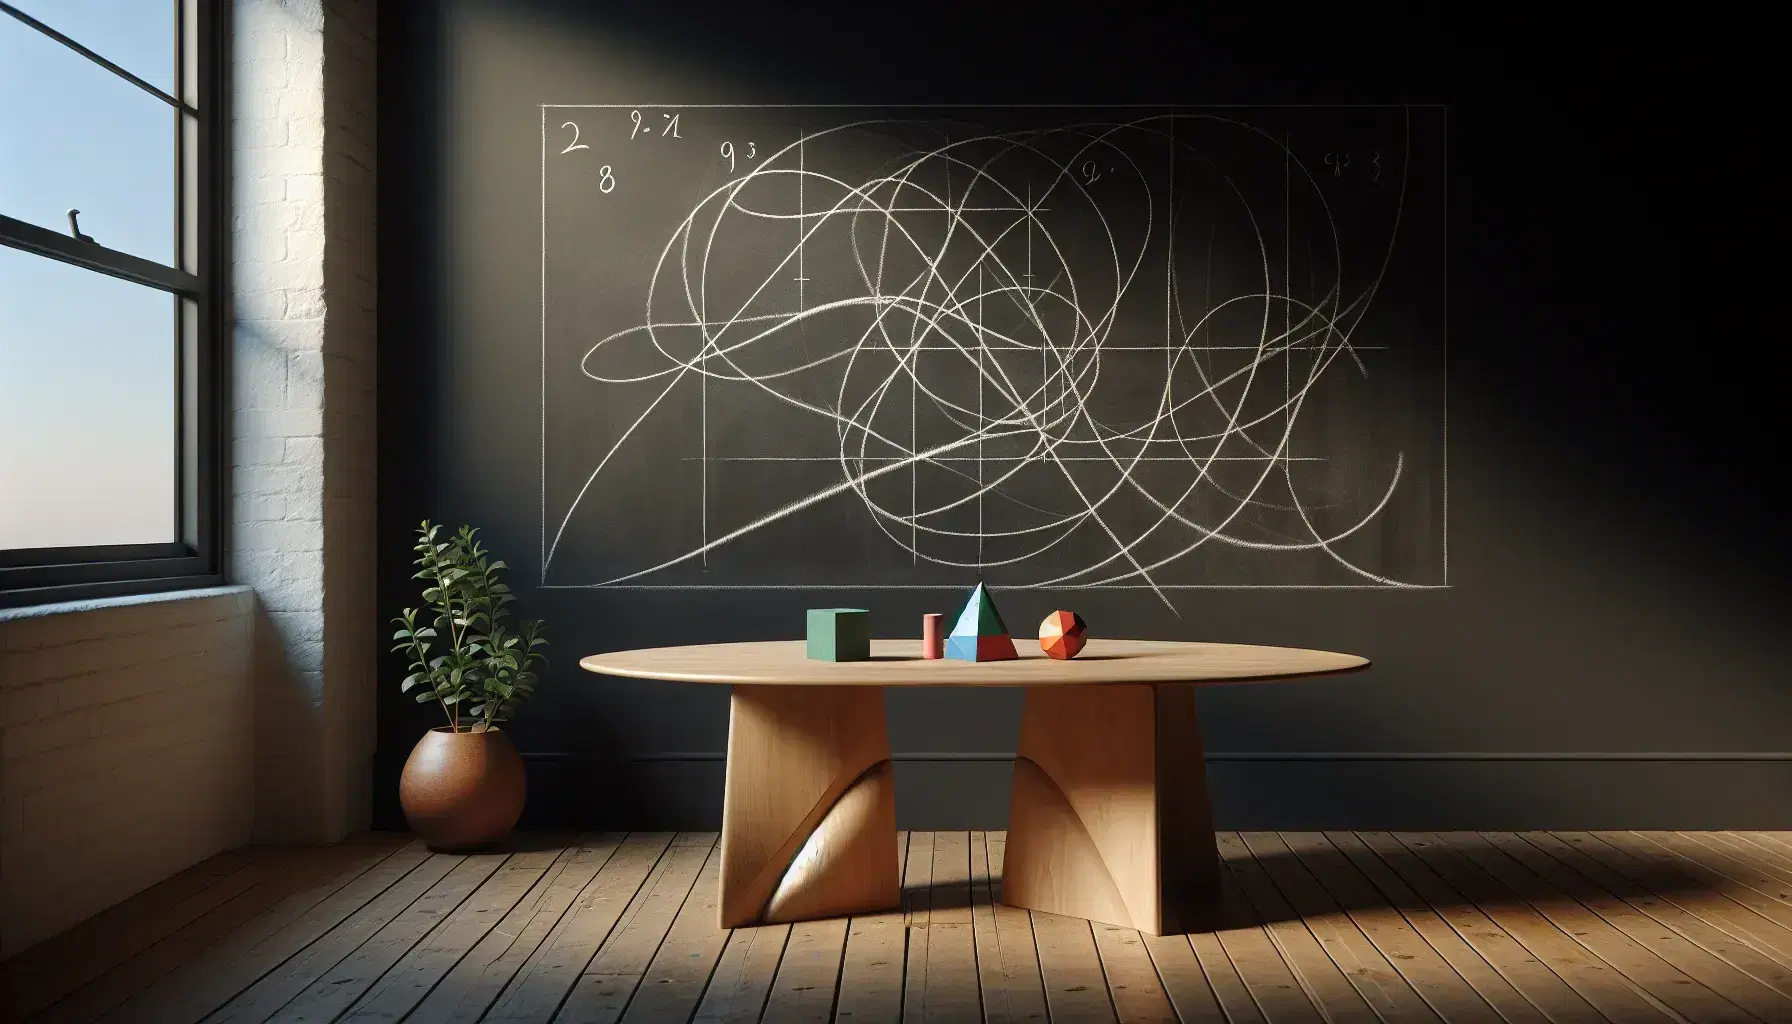 Pizarra con trazos de tiza y mesa con figuras geométricas en 3D junto a planta en maceta, ambiente de estudio.